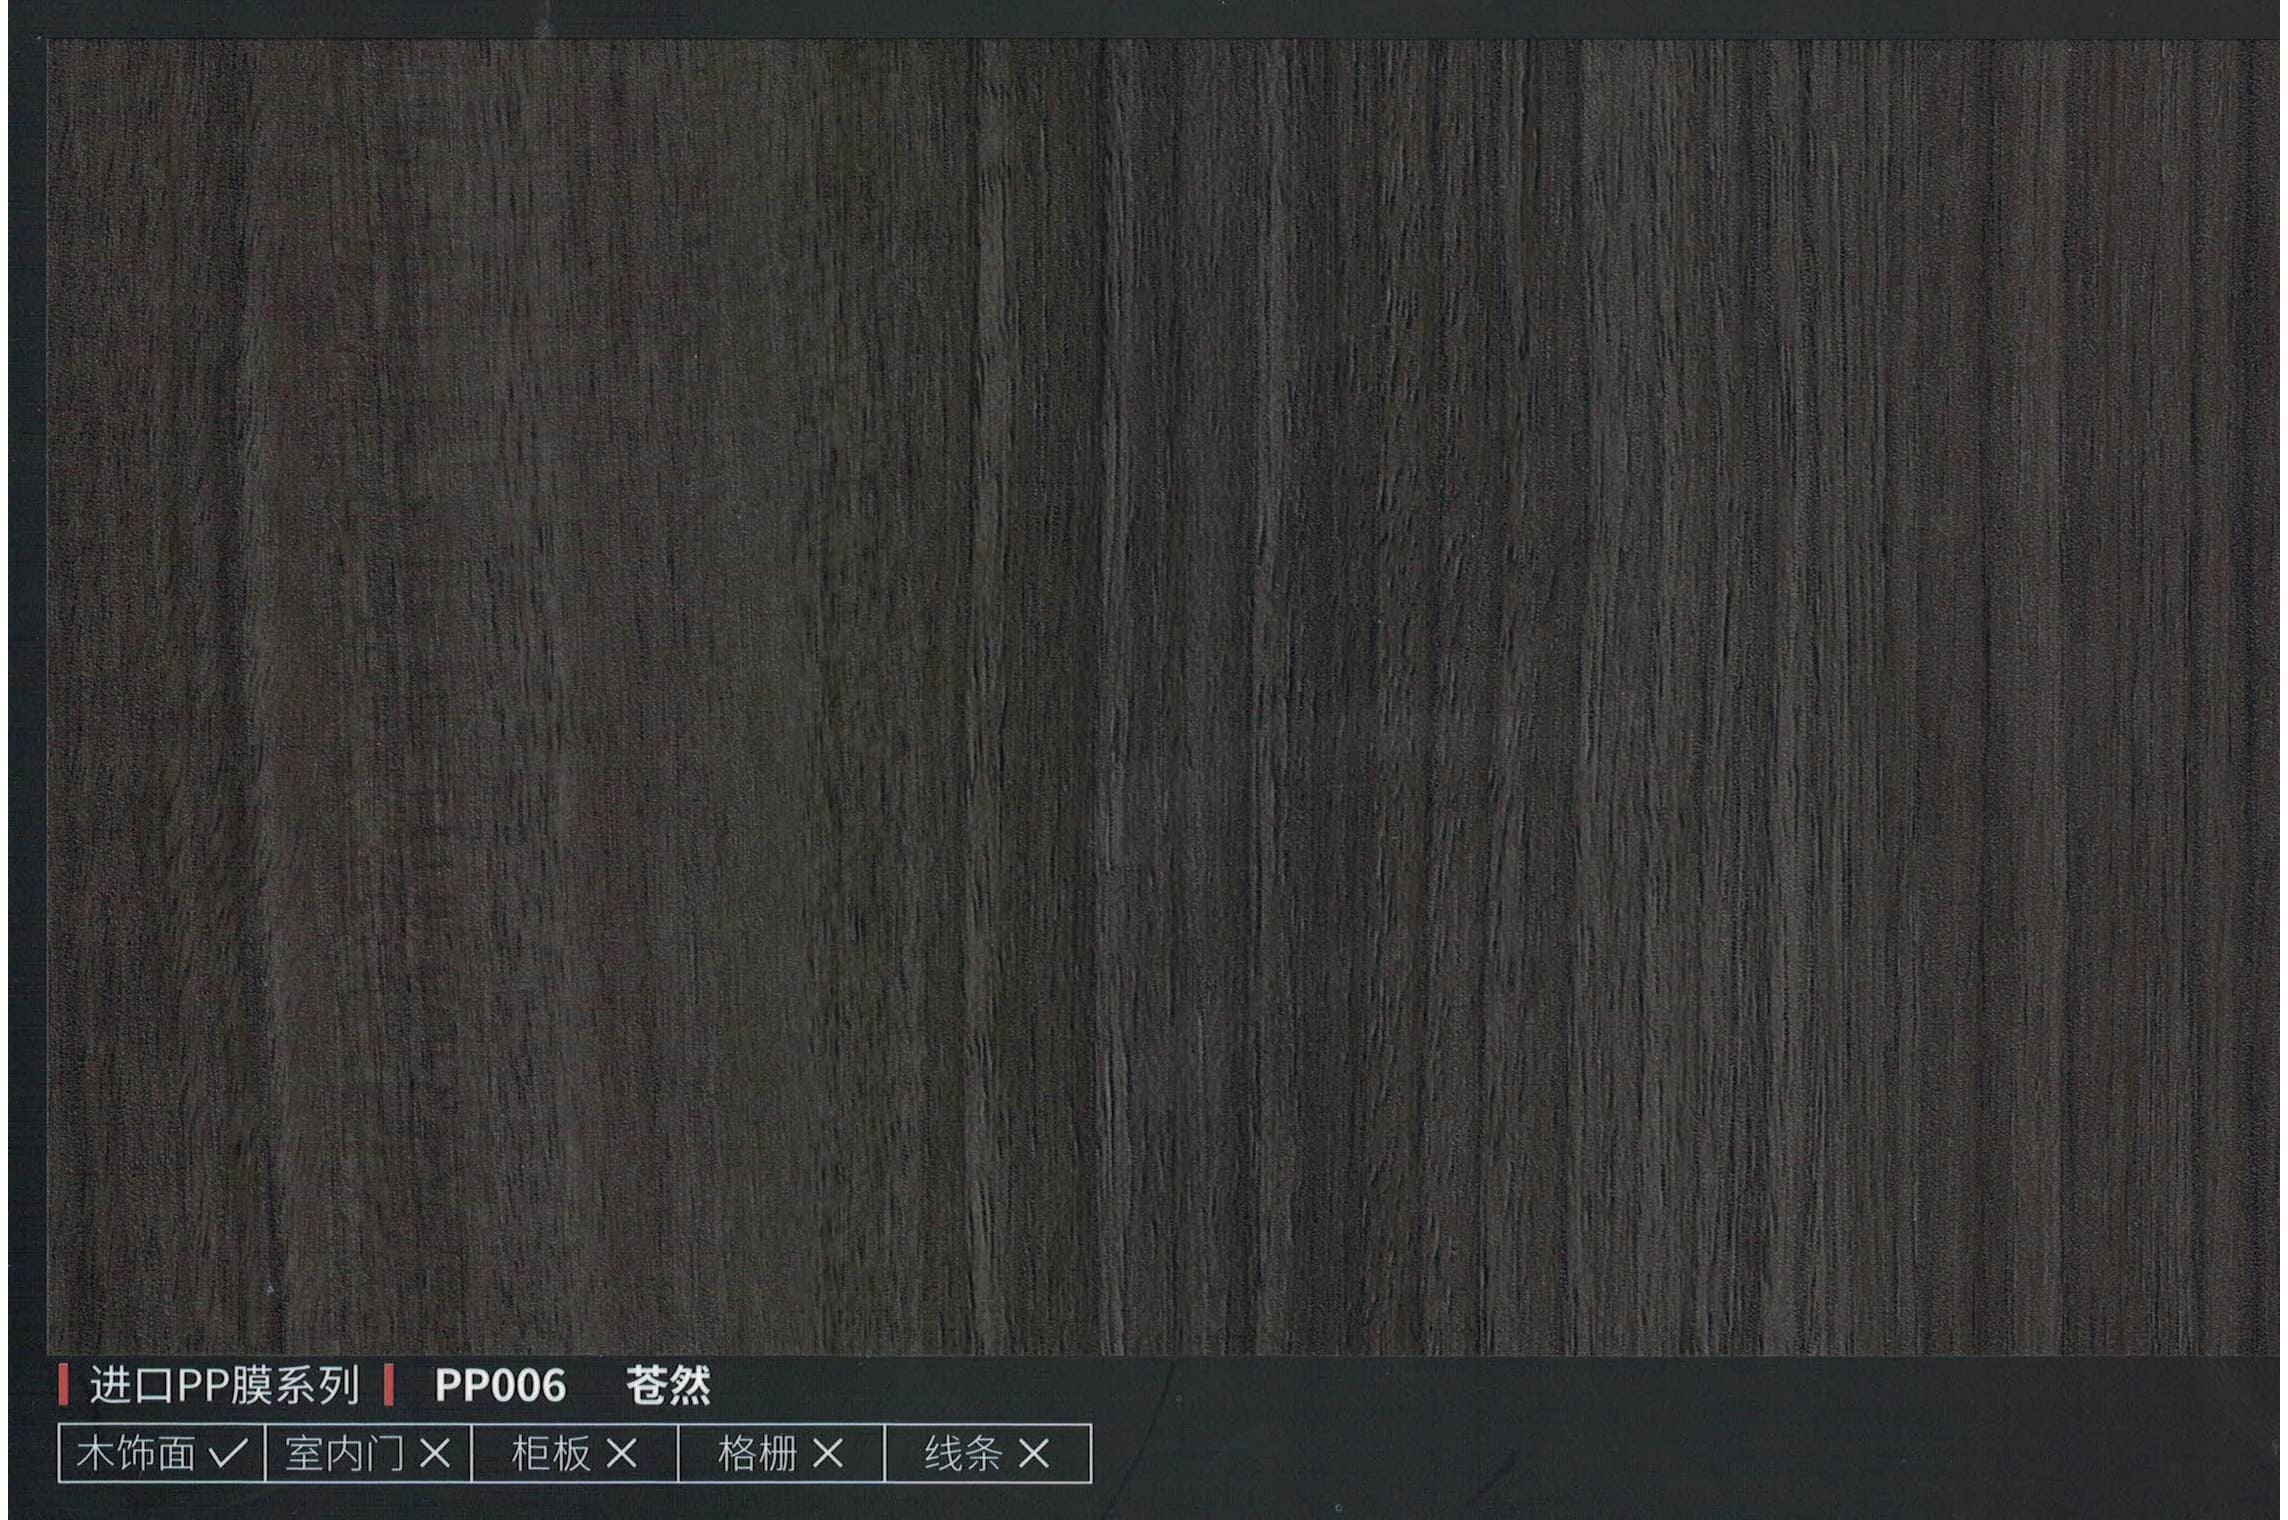 Бамбуковая панель PP006, 1200*2800*8мм, теснение дерева, черный